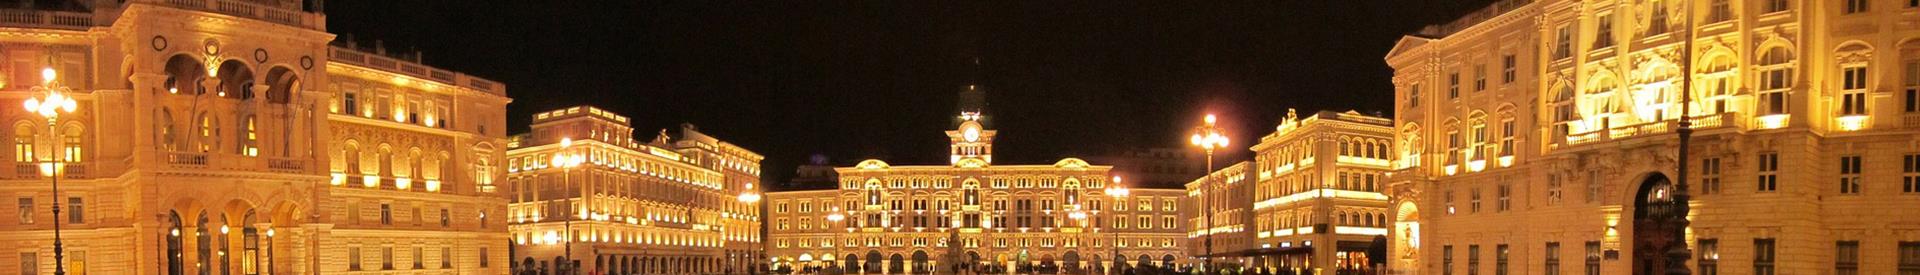  Cerchi un hotel per il tuo soggiorno a Trieste (TS)? Prenota al Hotel San Giusto